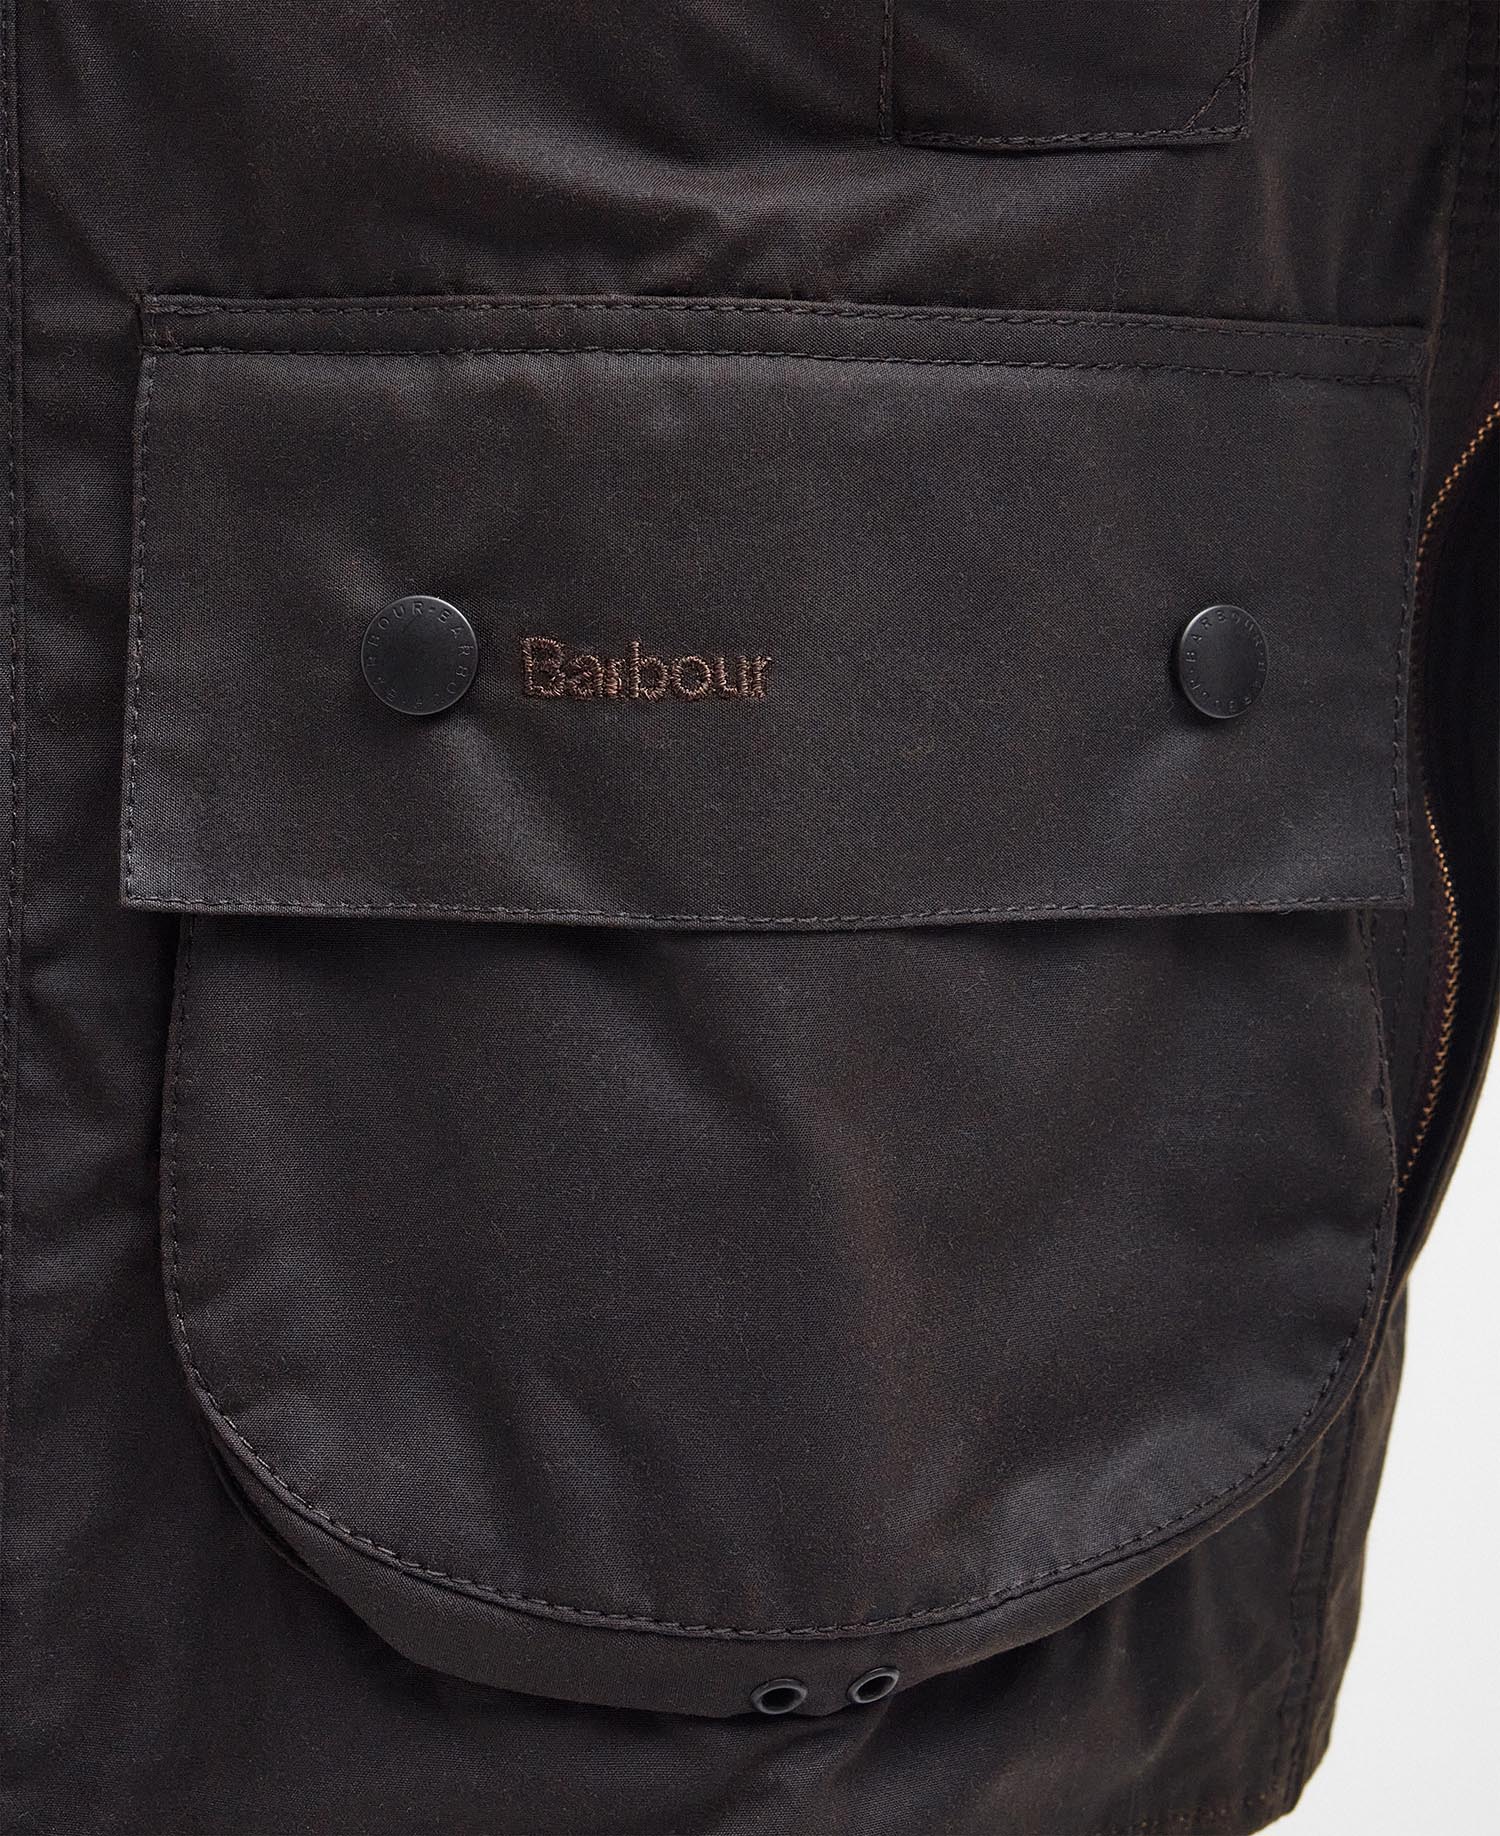 Beaufort Wax Jacket - Barbour 38 / Black